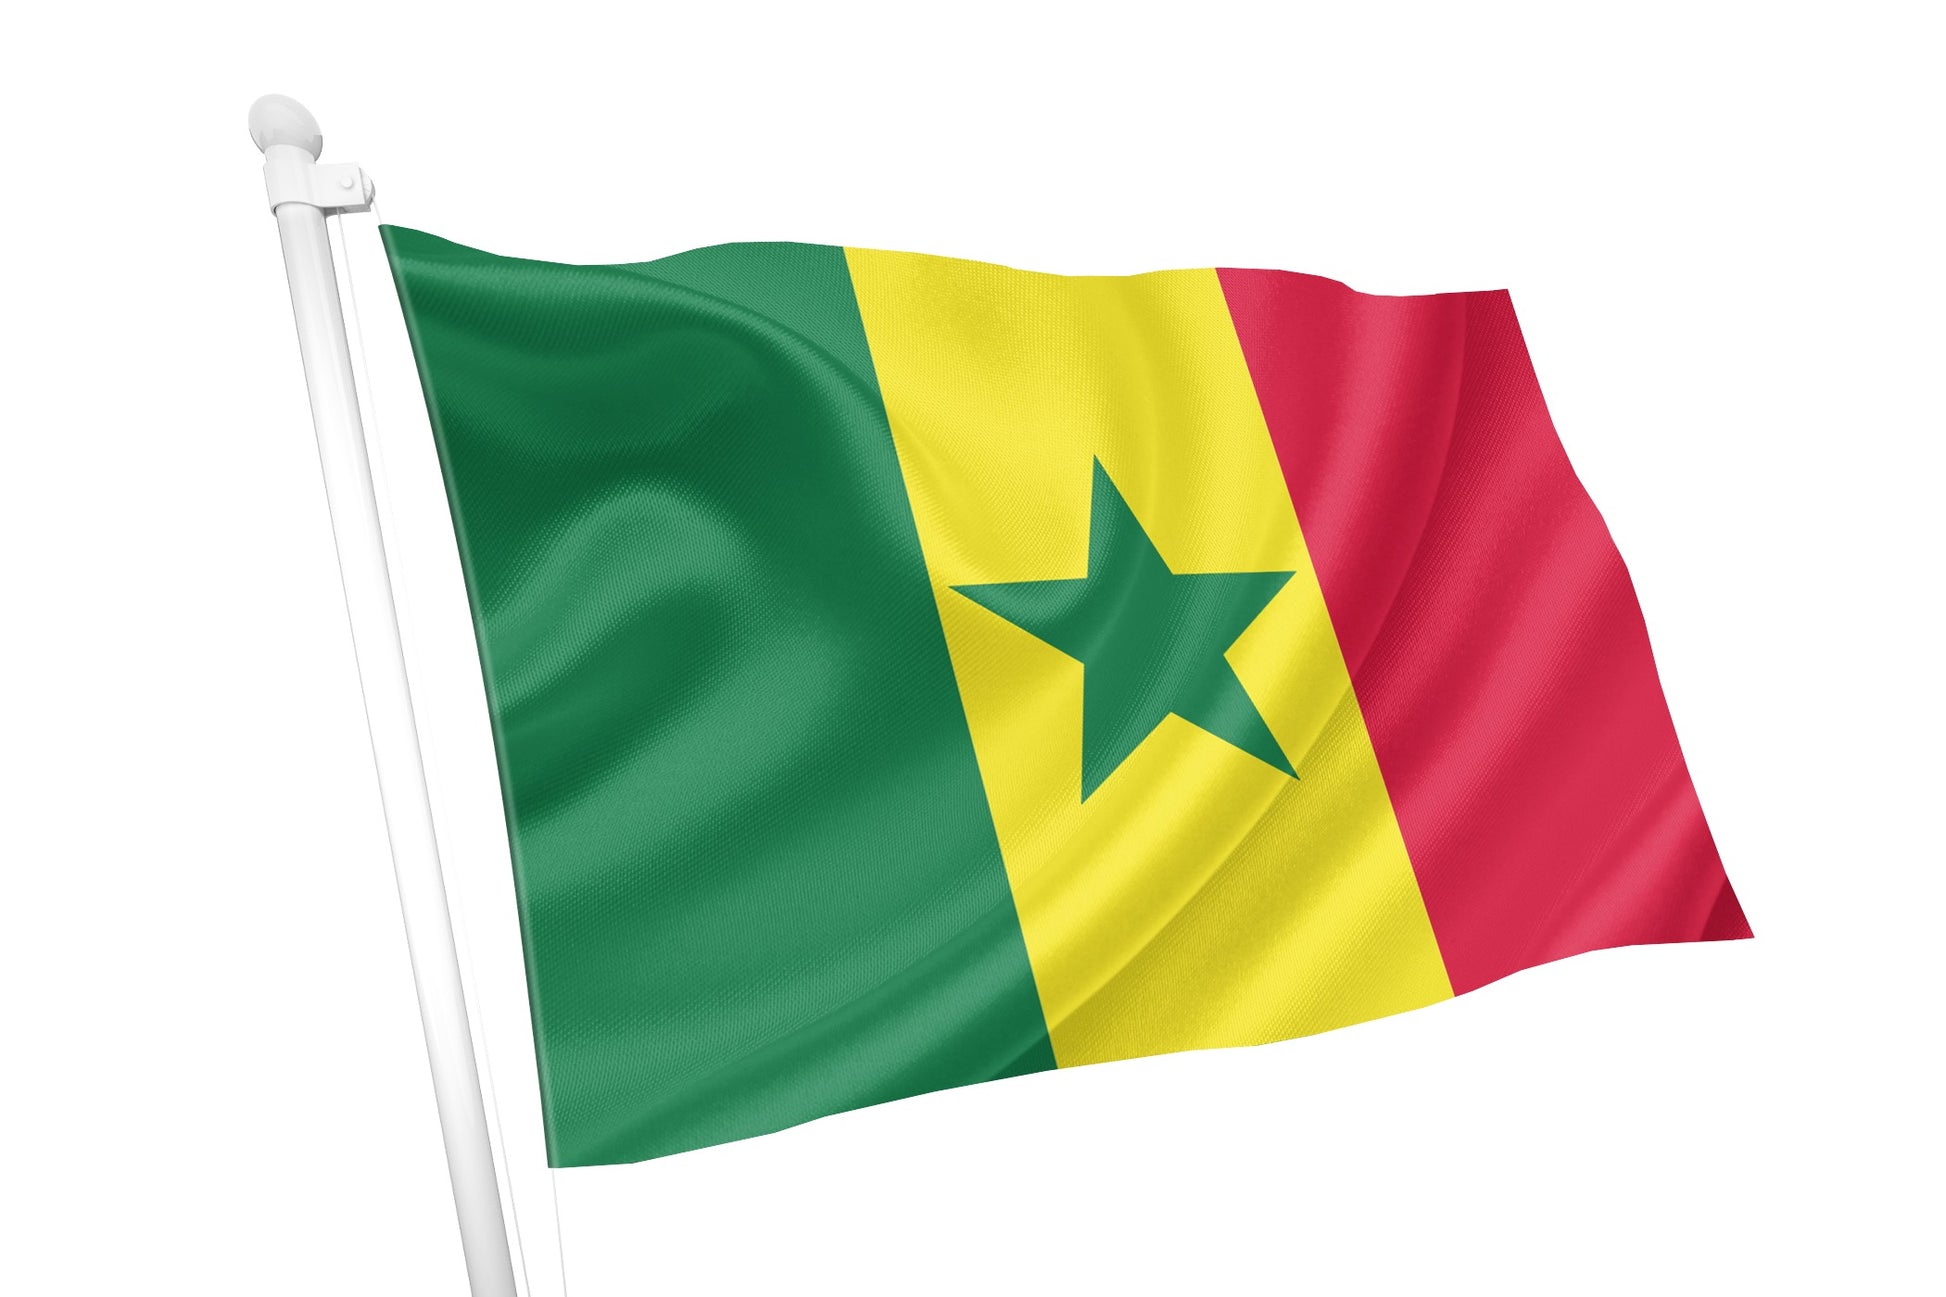 Bandeira Nacional do Senegal – Flags Ireland Prospect Design